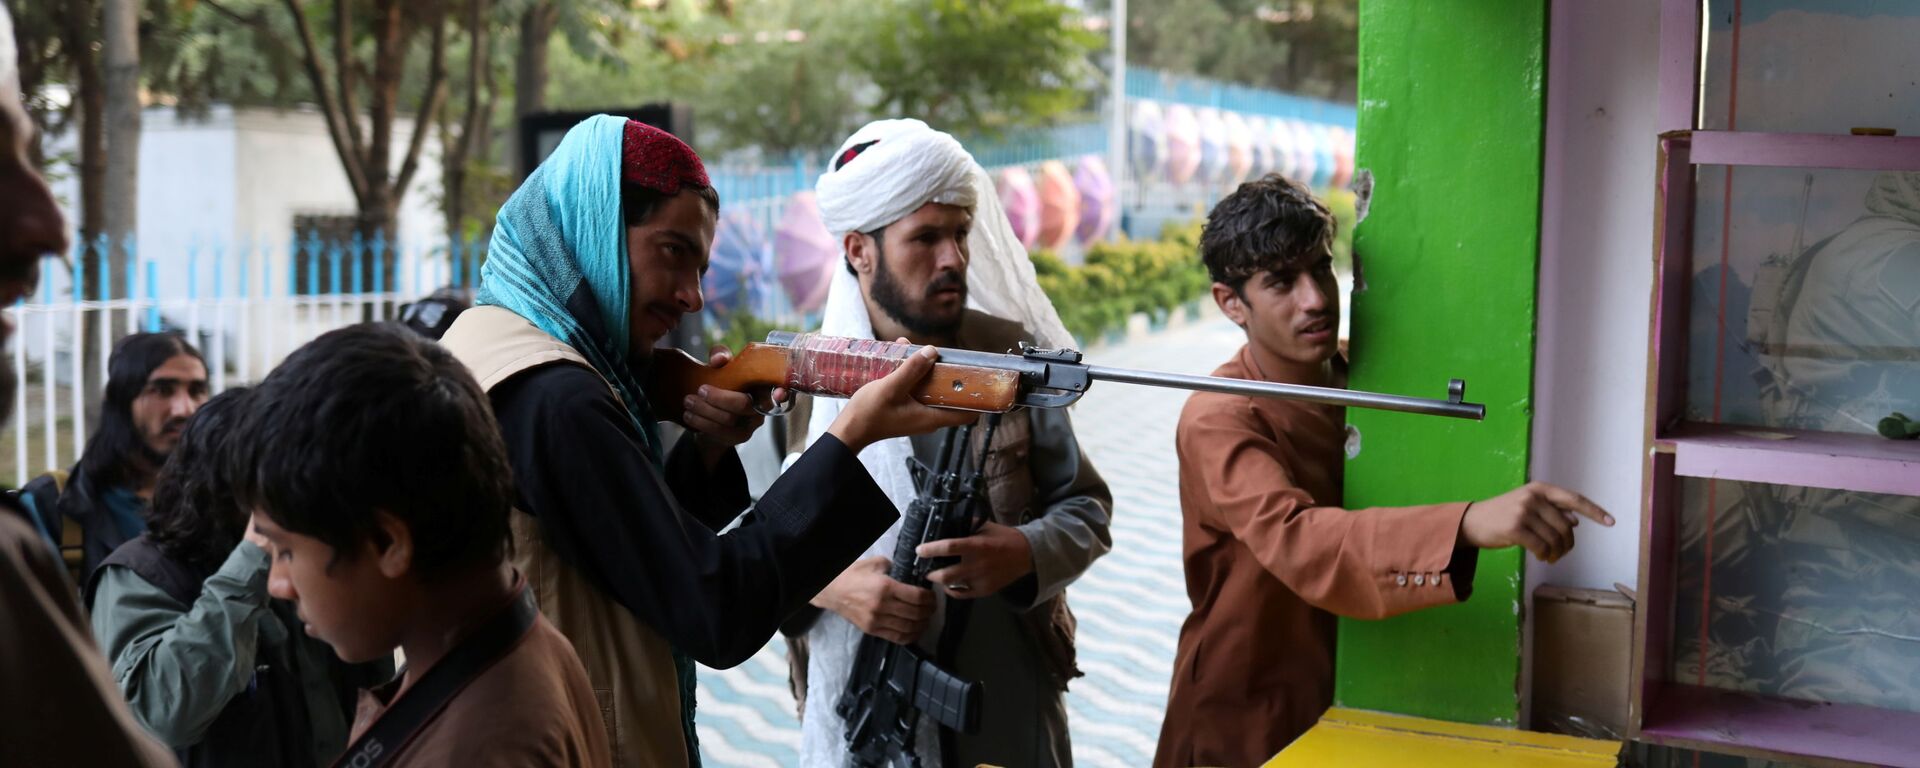 Бойцы Талибана* во время стрельбы в тире в парке развлечений в Кабуле - Sputnik Тоҷикистон, 1920, 20.01.2022